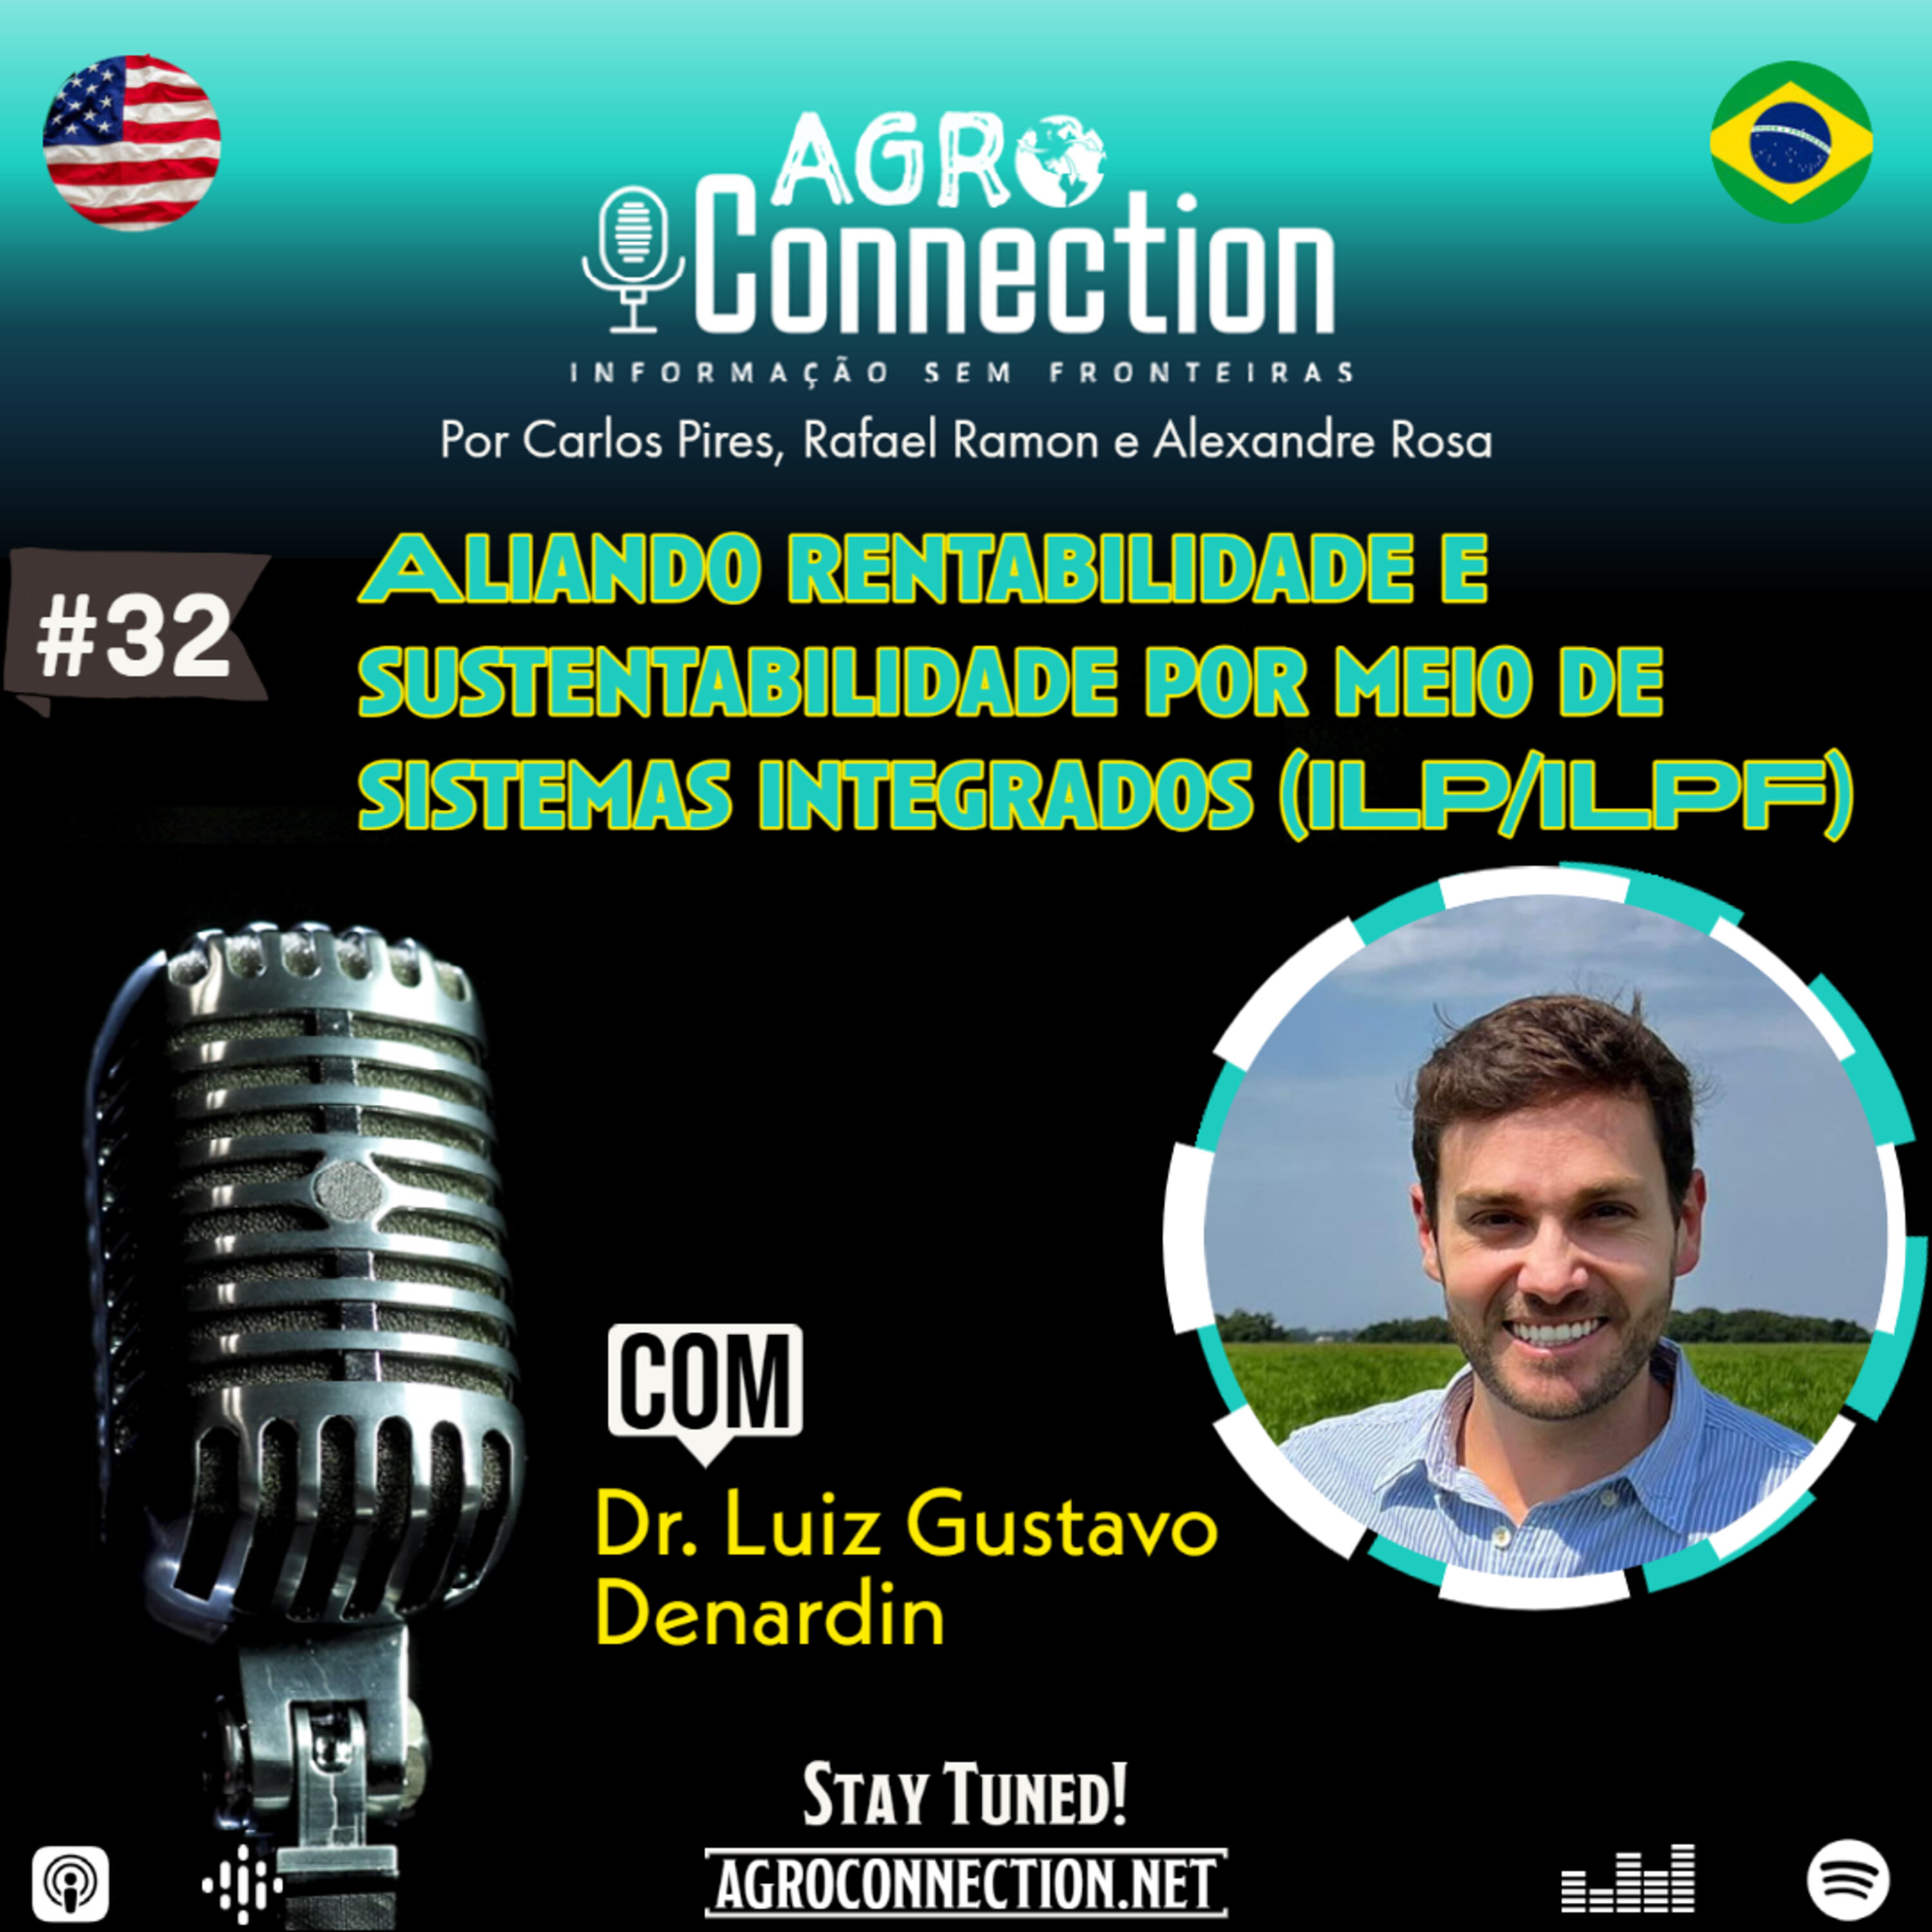 EP #32 - Aliando rentabilidade e sustentabilidade por meio de sistemas integrados (ILP/ILPF). Com o Dr Luiz Gustavo Denardin